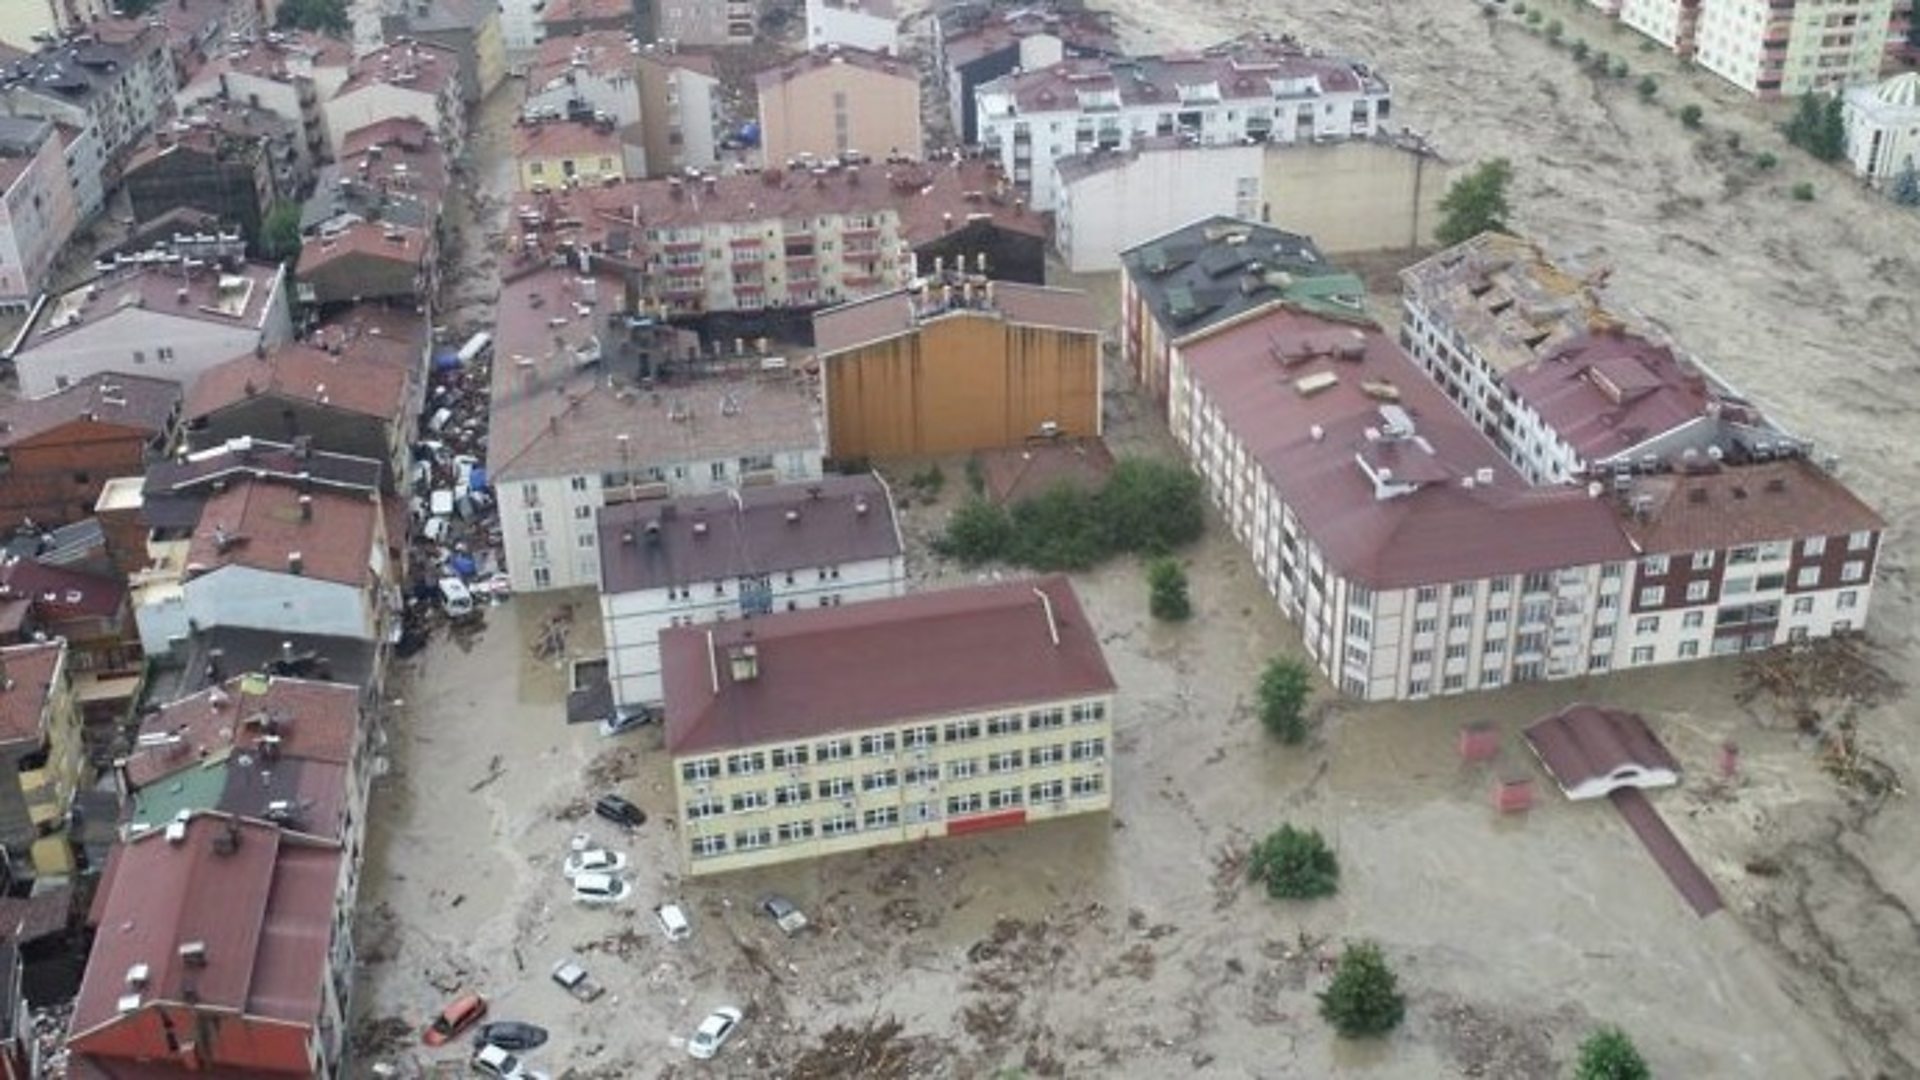 Thổ Nhĩ Kỳ vẫn tiếp tục thảm họa: Các thành phố vừa đổ nát vì động đất giờ ngập trong lũ lụt, đường bị xẻ đôi trong giây lát, nhà cửa xe cộ đều cuốn trôi   - Ảnh 5.